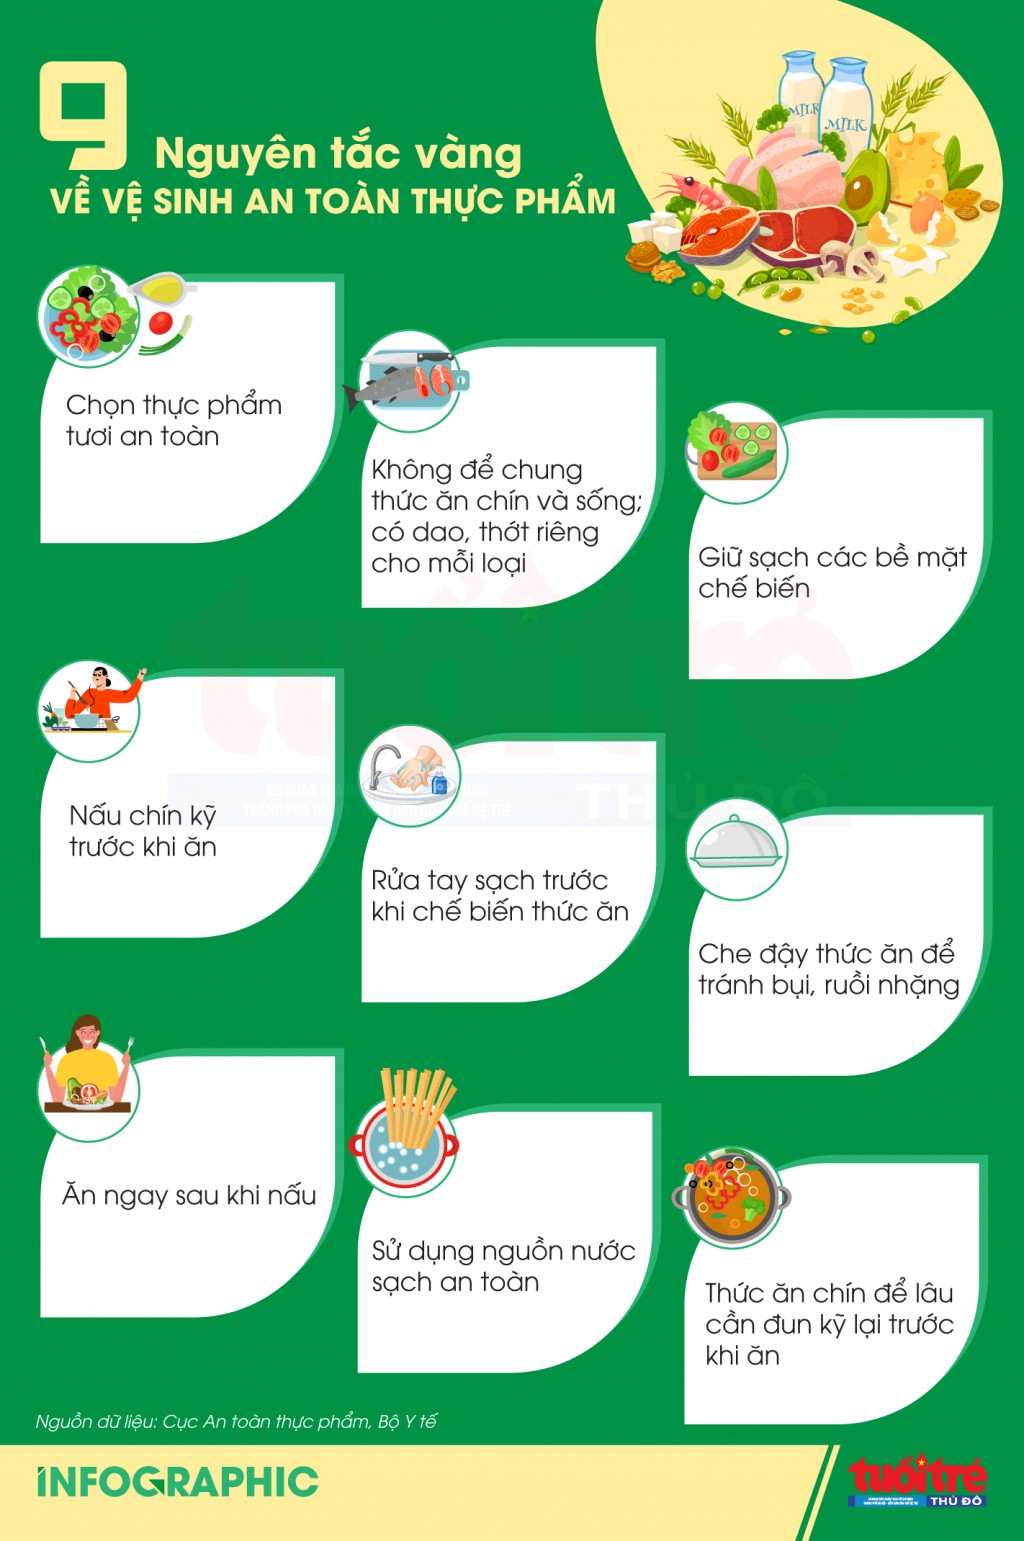 9 nguyên tắc vàng về vệ sinh an toàn thực phẩm